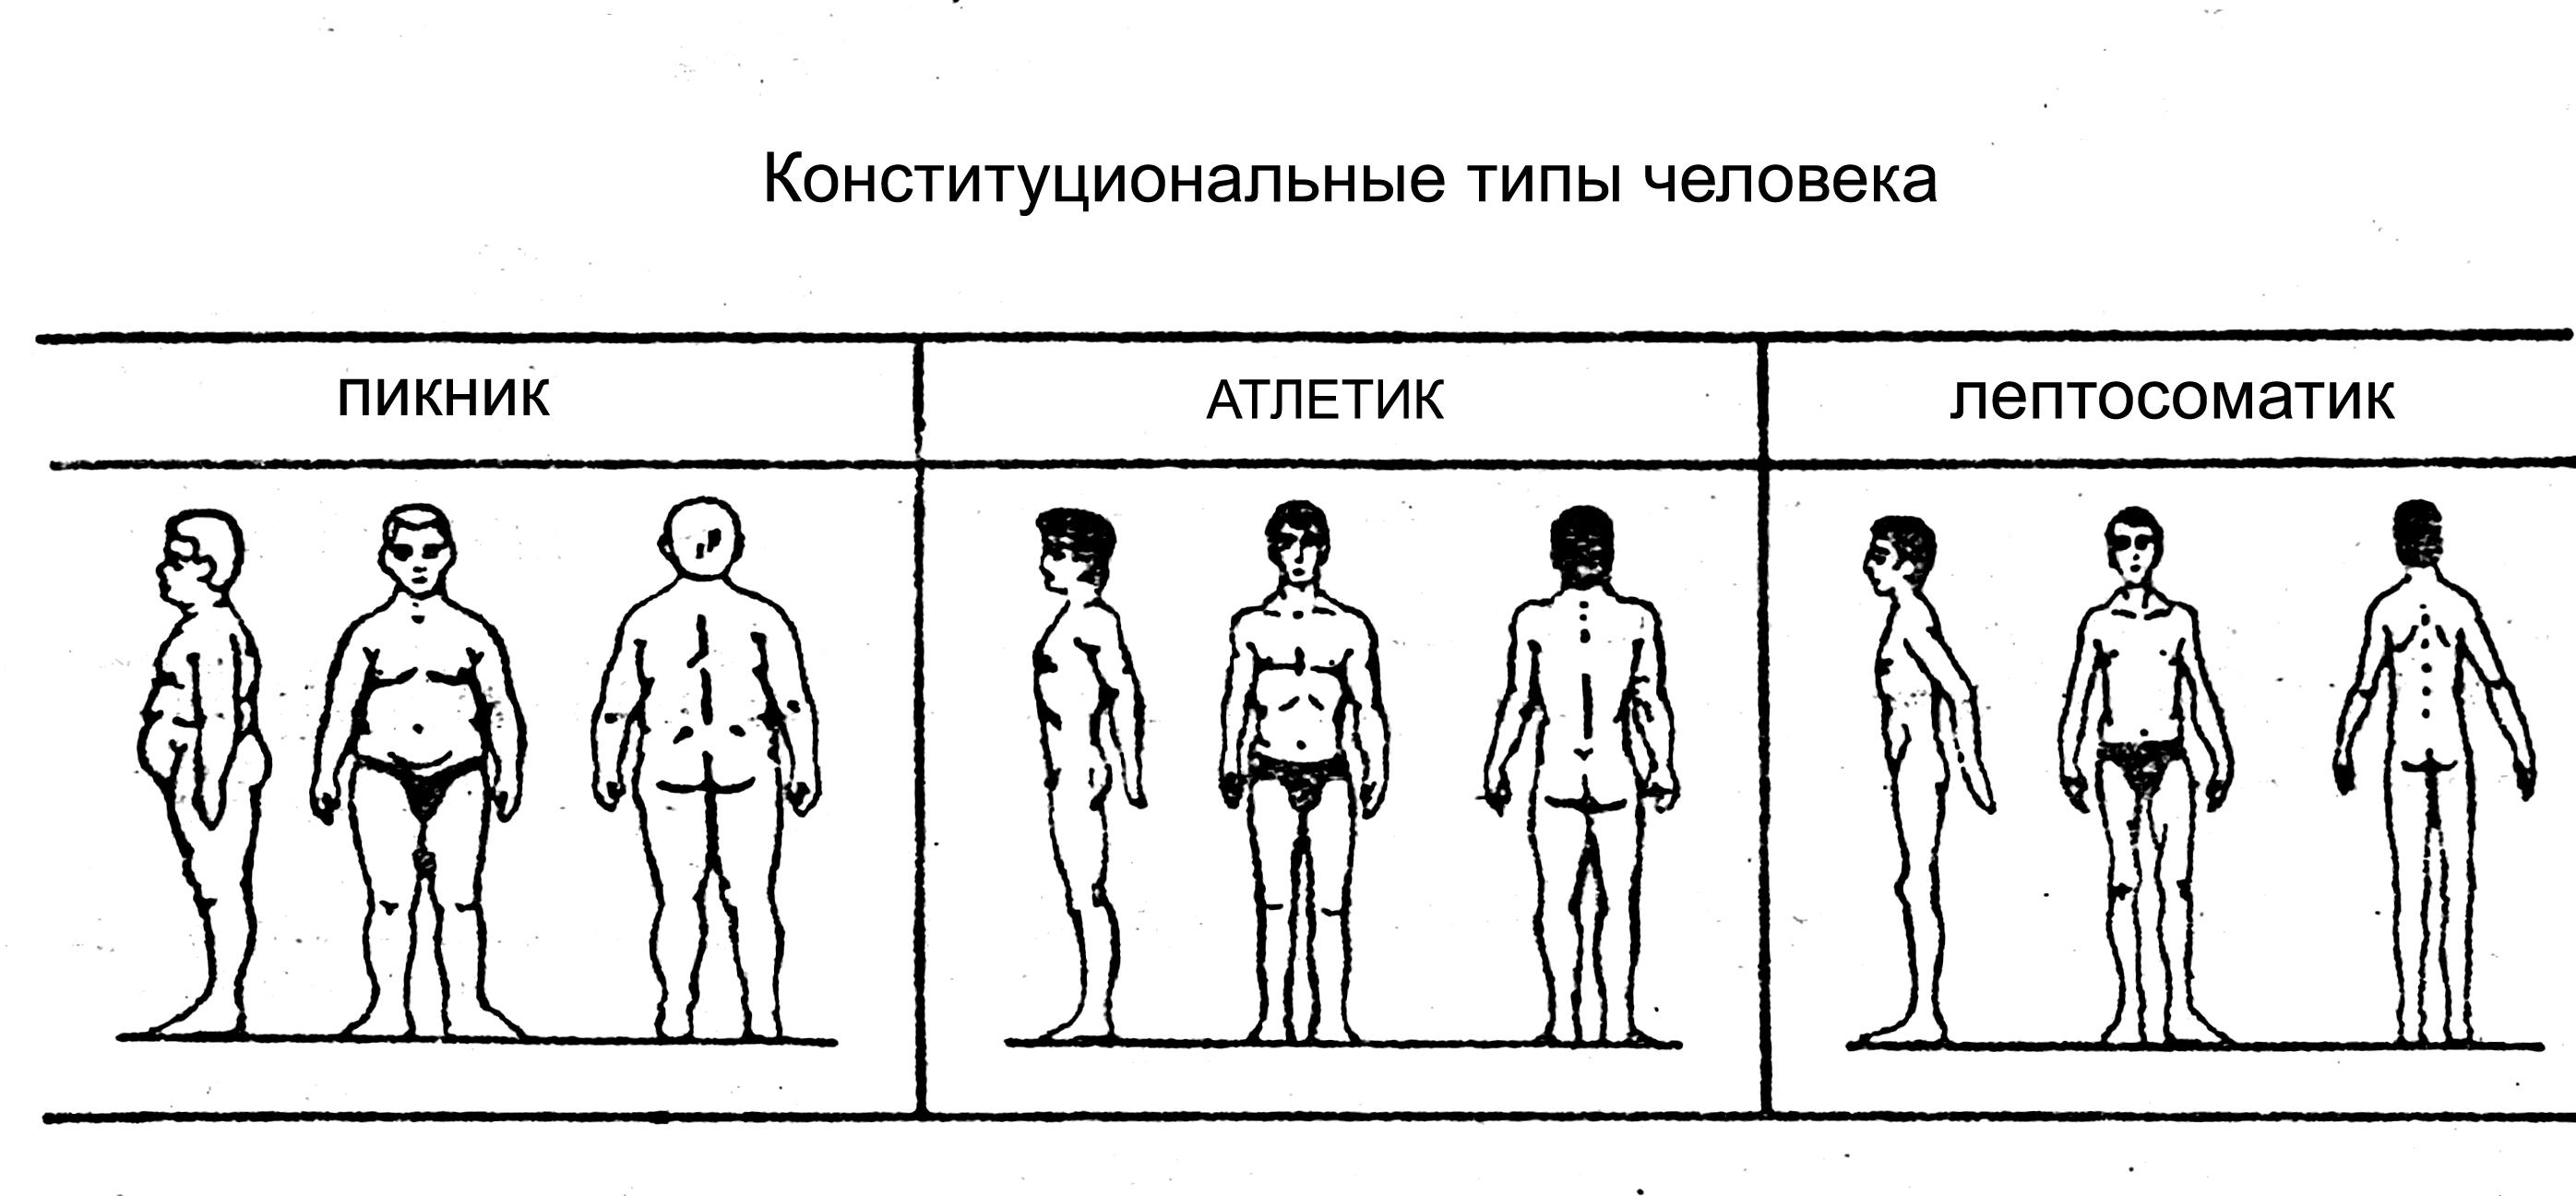 Методика «7 радикалов» виктора пономаренко. можно ли определить характер человека по внешности?